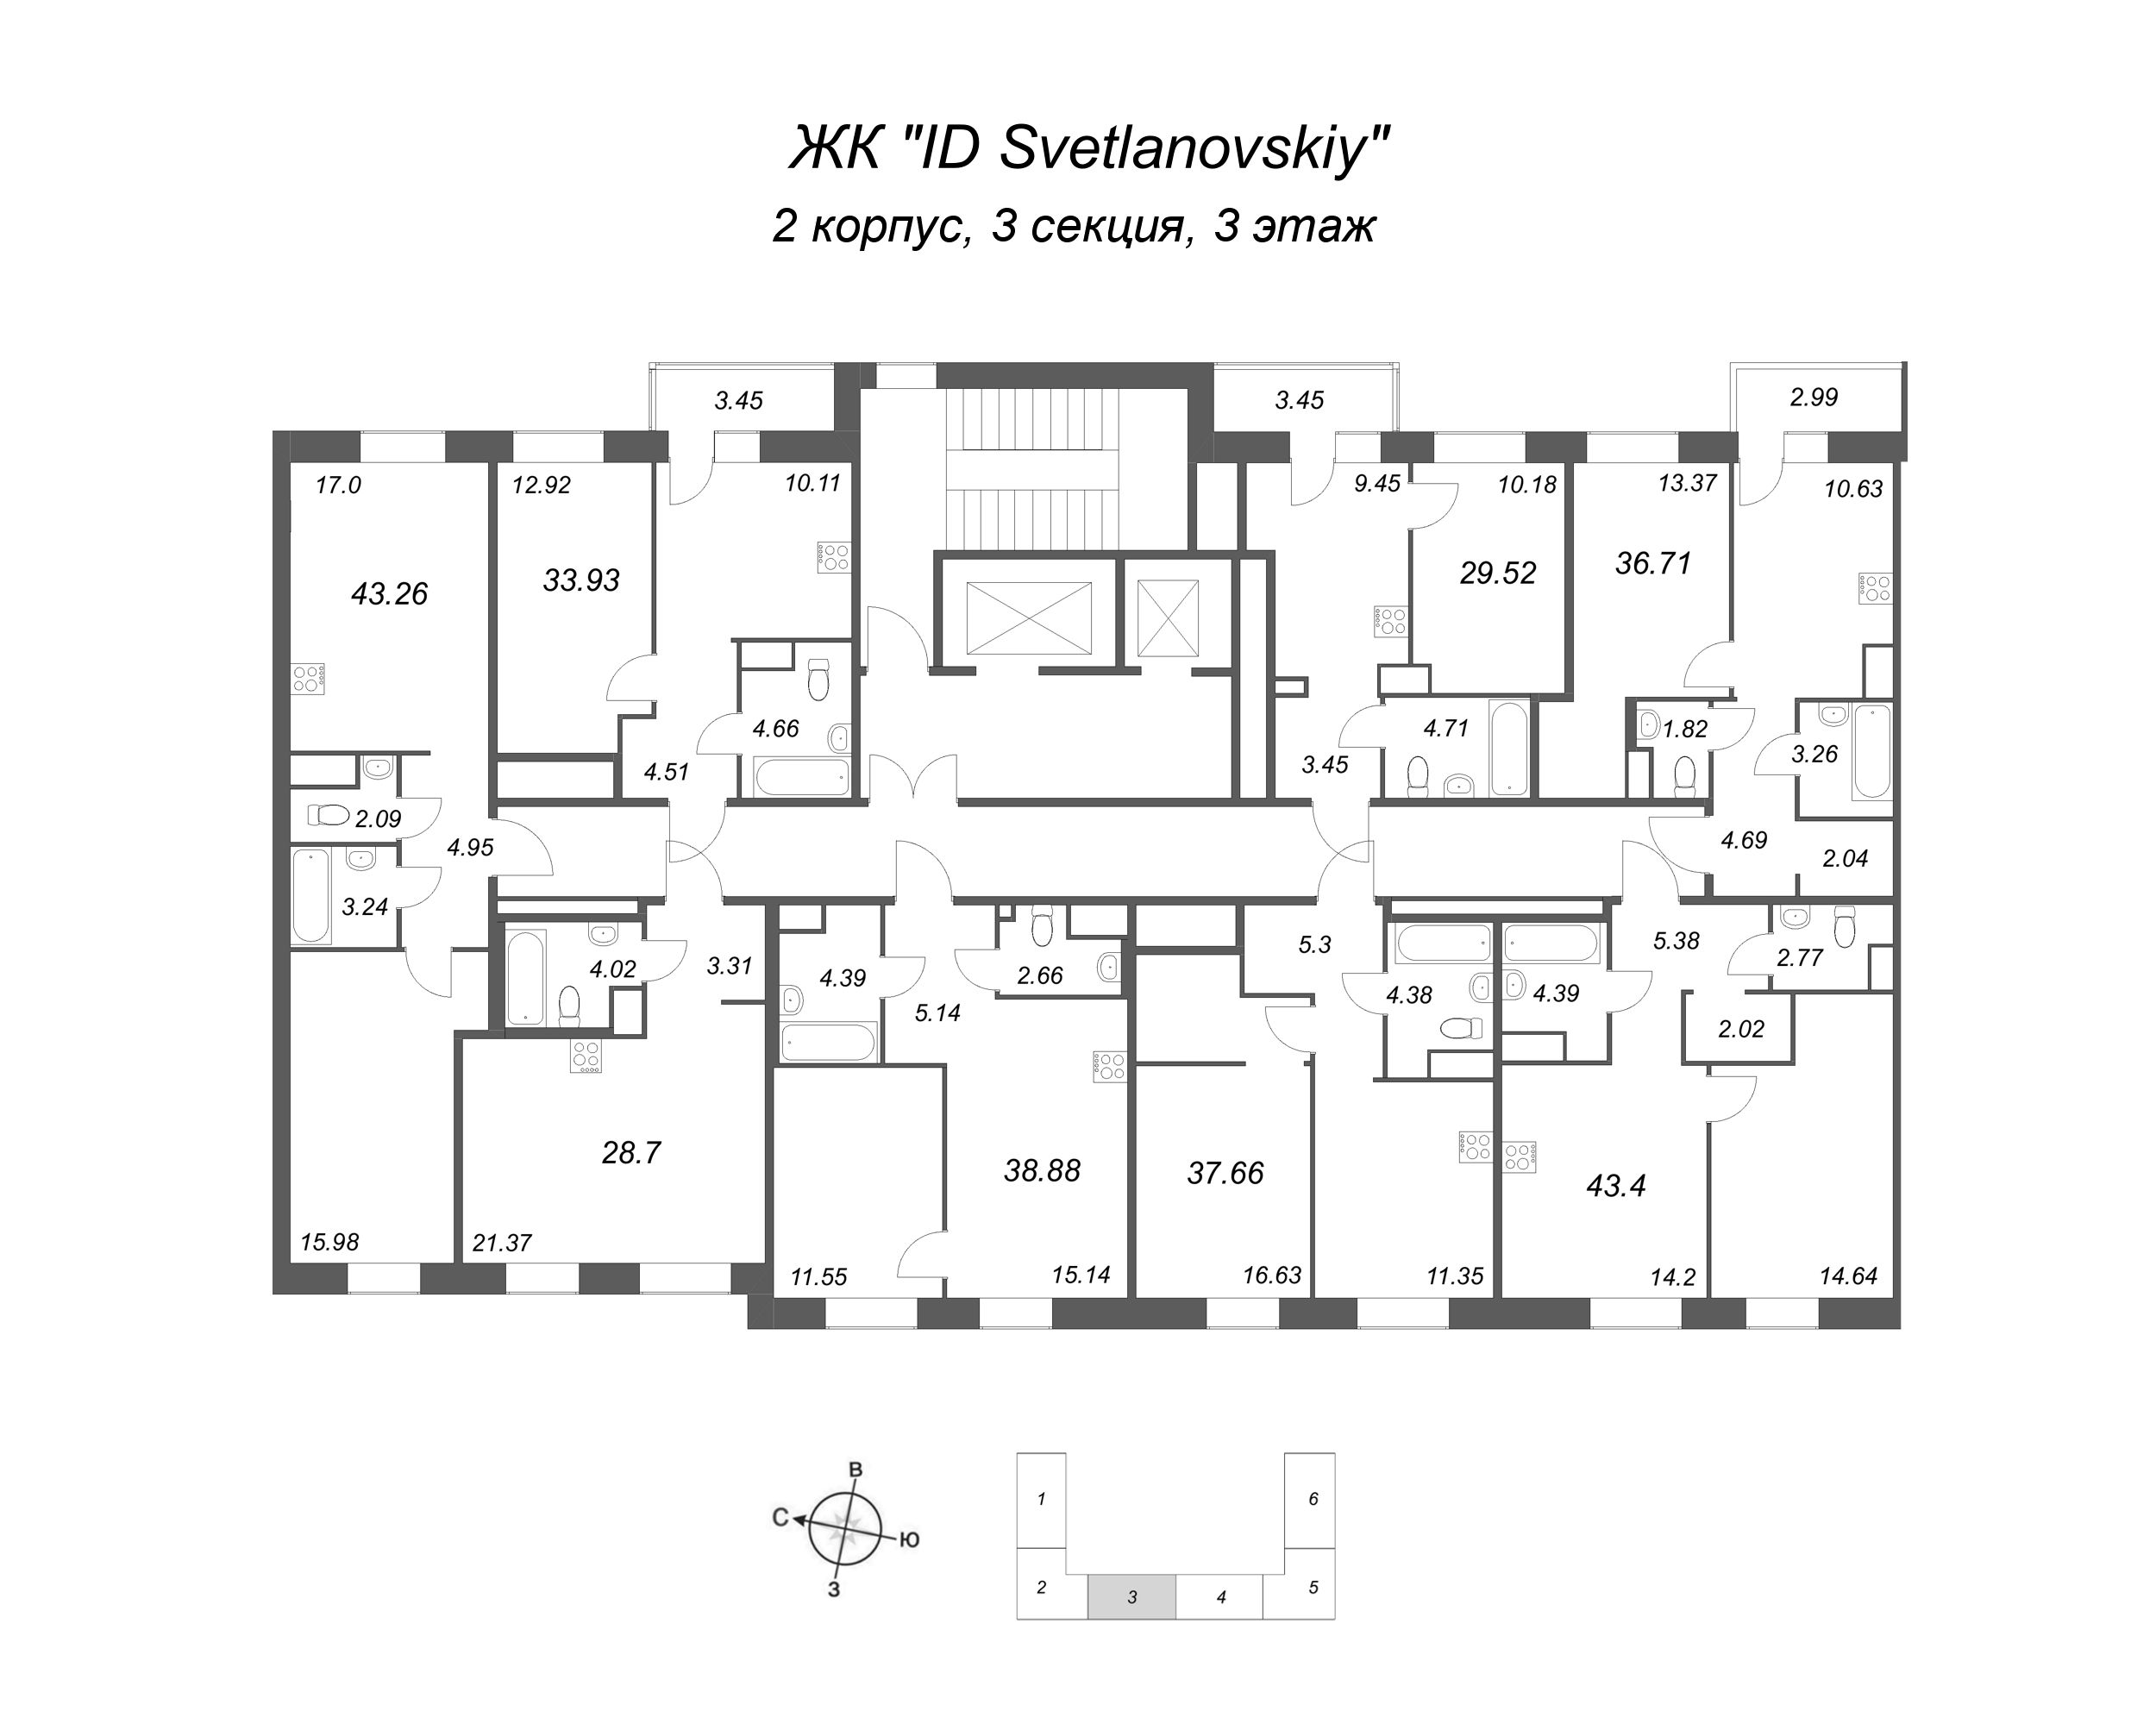 Квартира-студия, 28.7 м² в ЖК "ID Svetlanovskiy" - планировка этажа